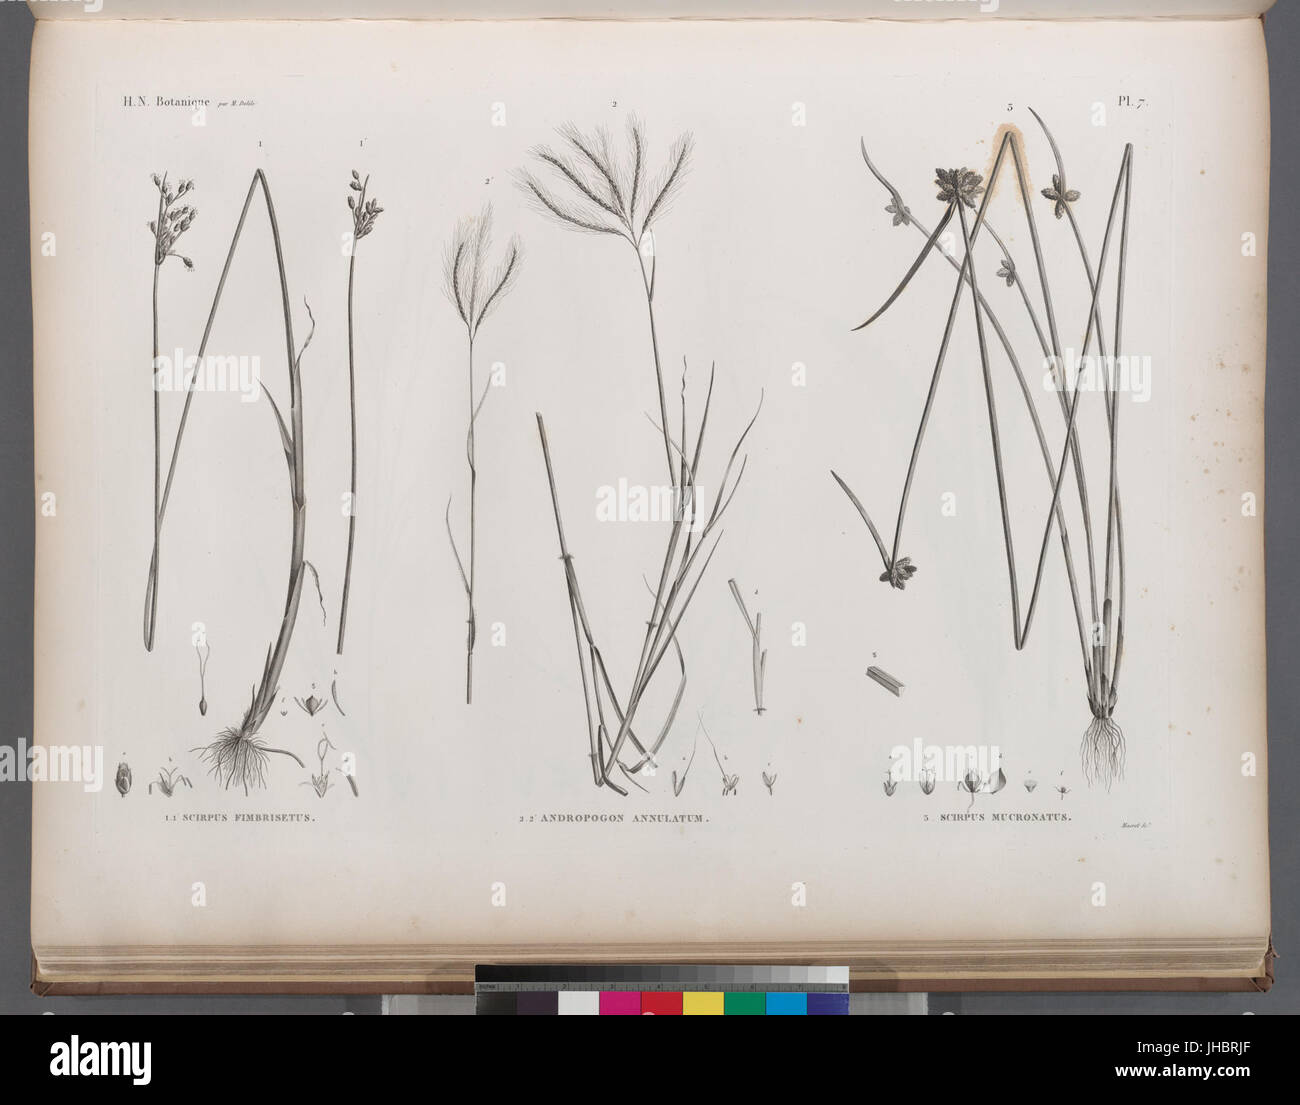 Botanique. 1.1'. Scirpus fimbrisetus; 2.2'. Andropogon annulatum; 3. Scirpus mucronatus (NYPL b14212718-1268639) Stock Photo